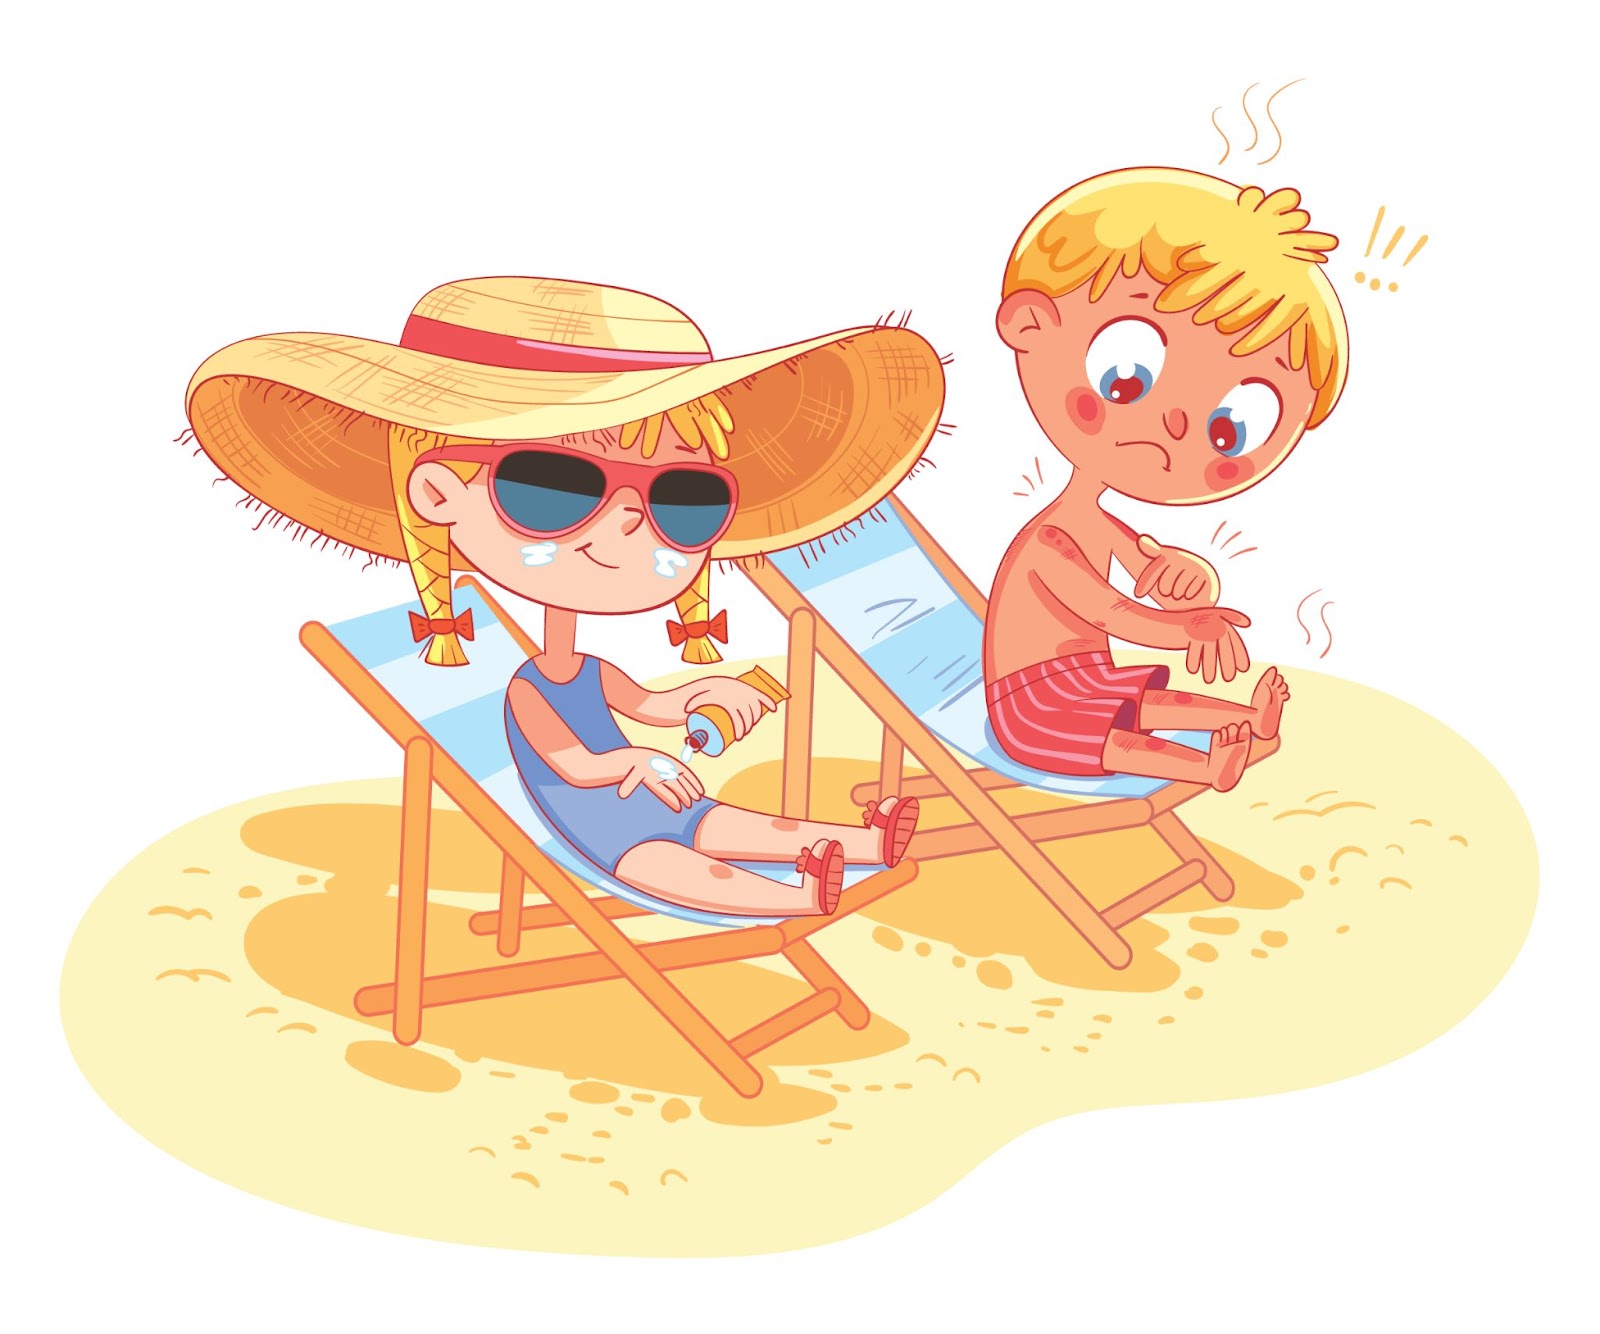 Bambini prendono il sole in spiaggia sui lettini. La ragazza usa la protezione solare. Il bambino si scotta e piange.